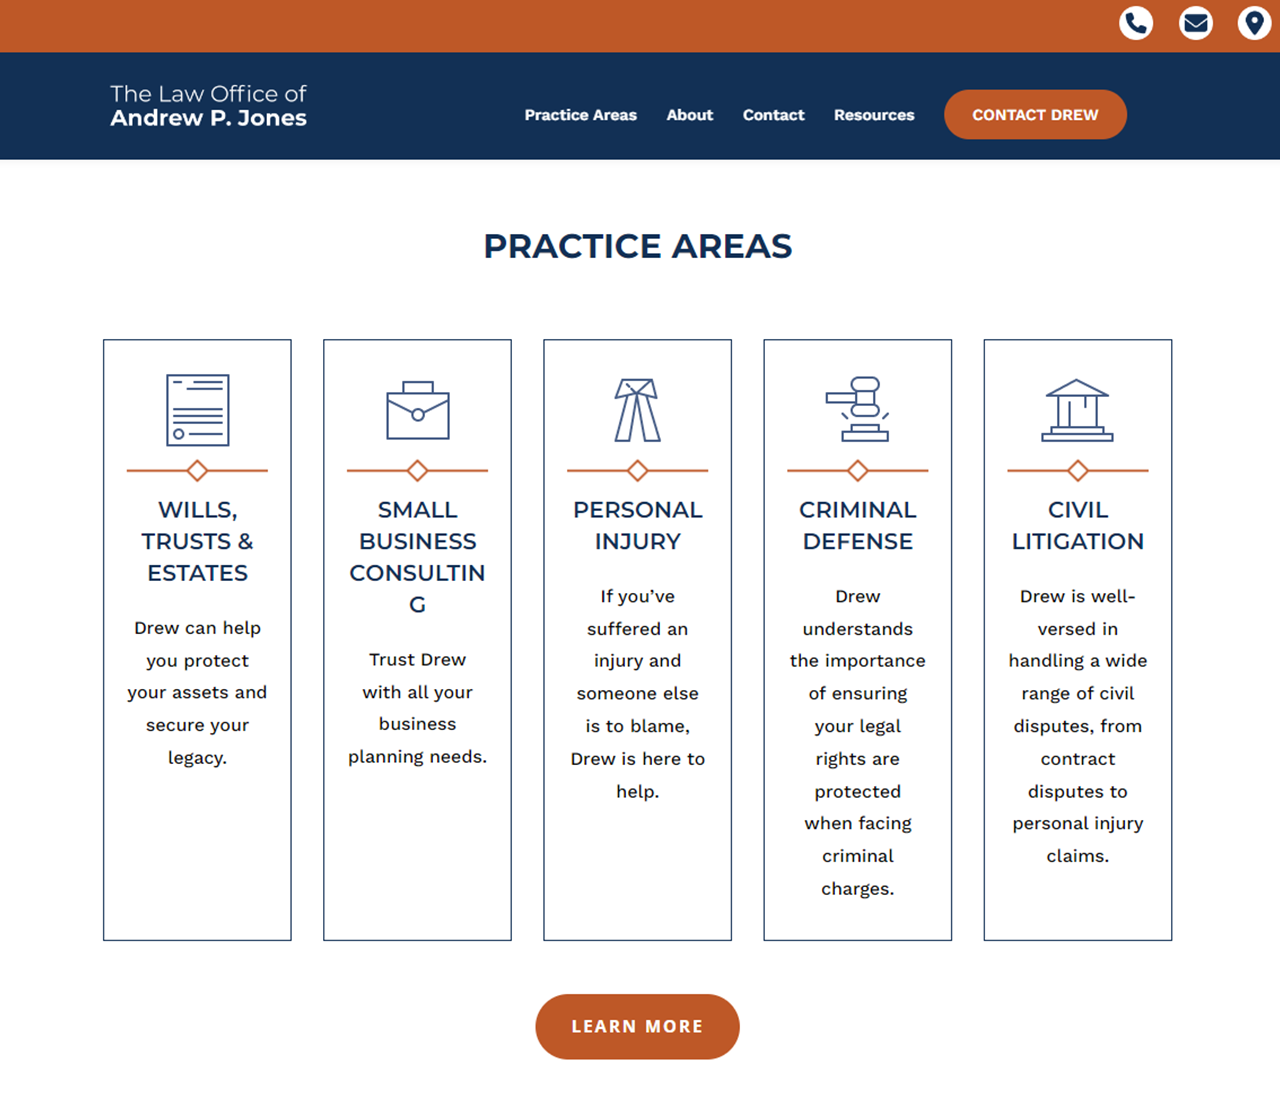 The Law Office of Andrew P. Jones Website Practice Areas